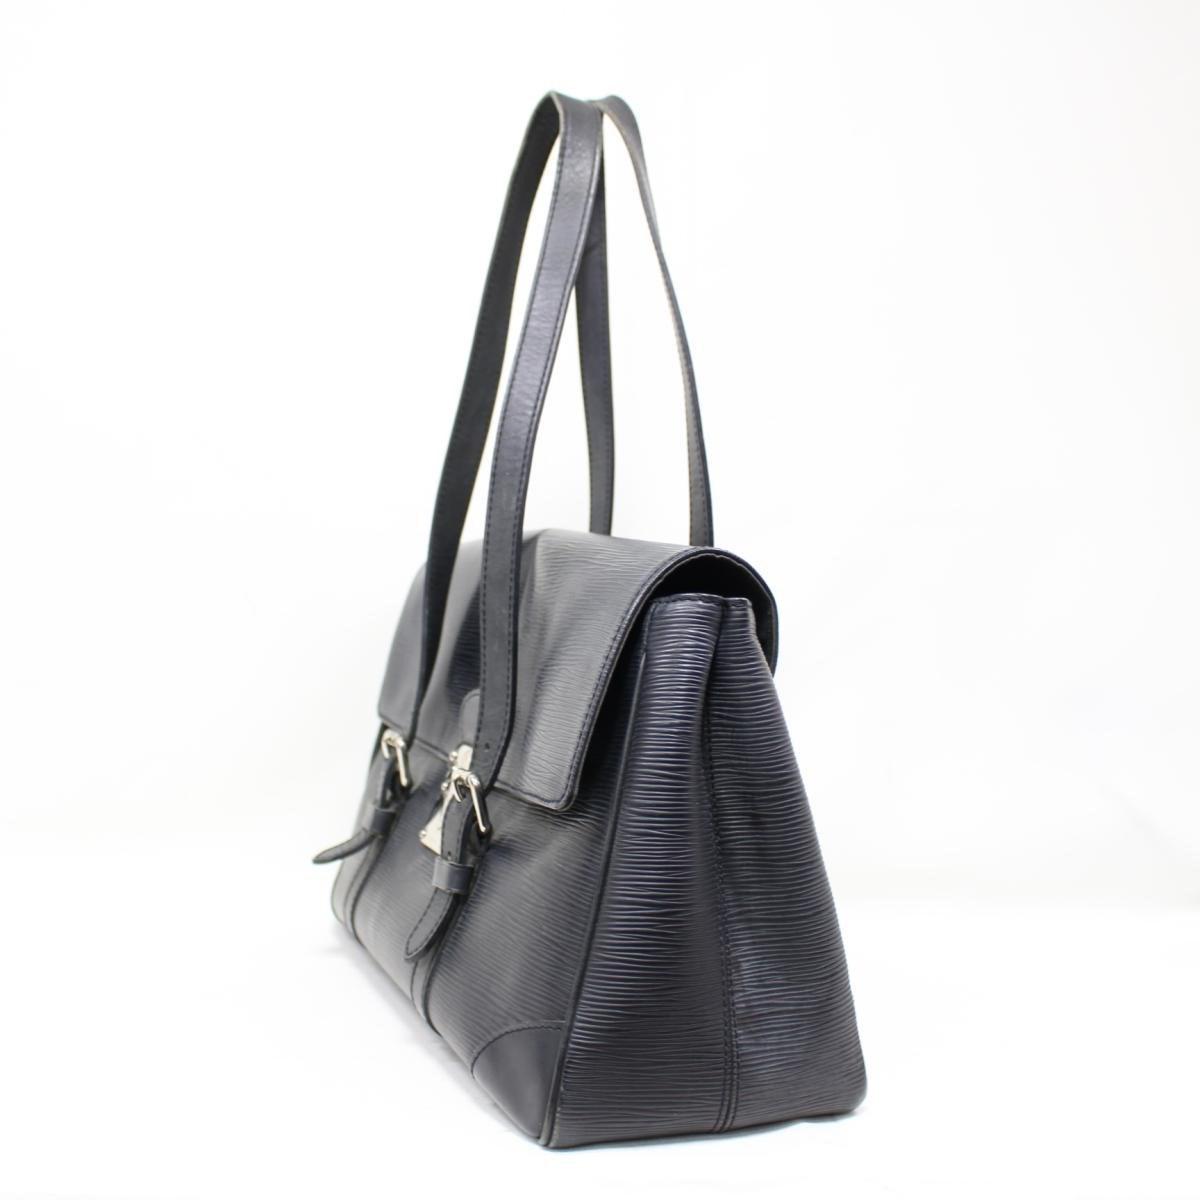 Louis Vuitton Black Epi Leather Segur MM Bag Authentic